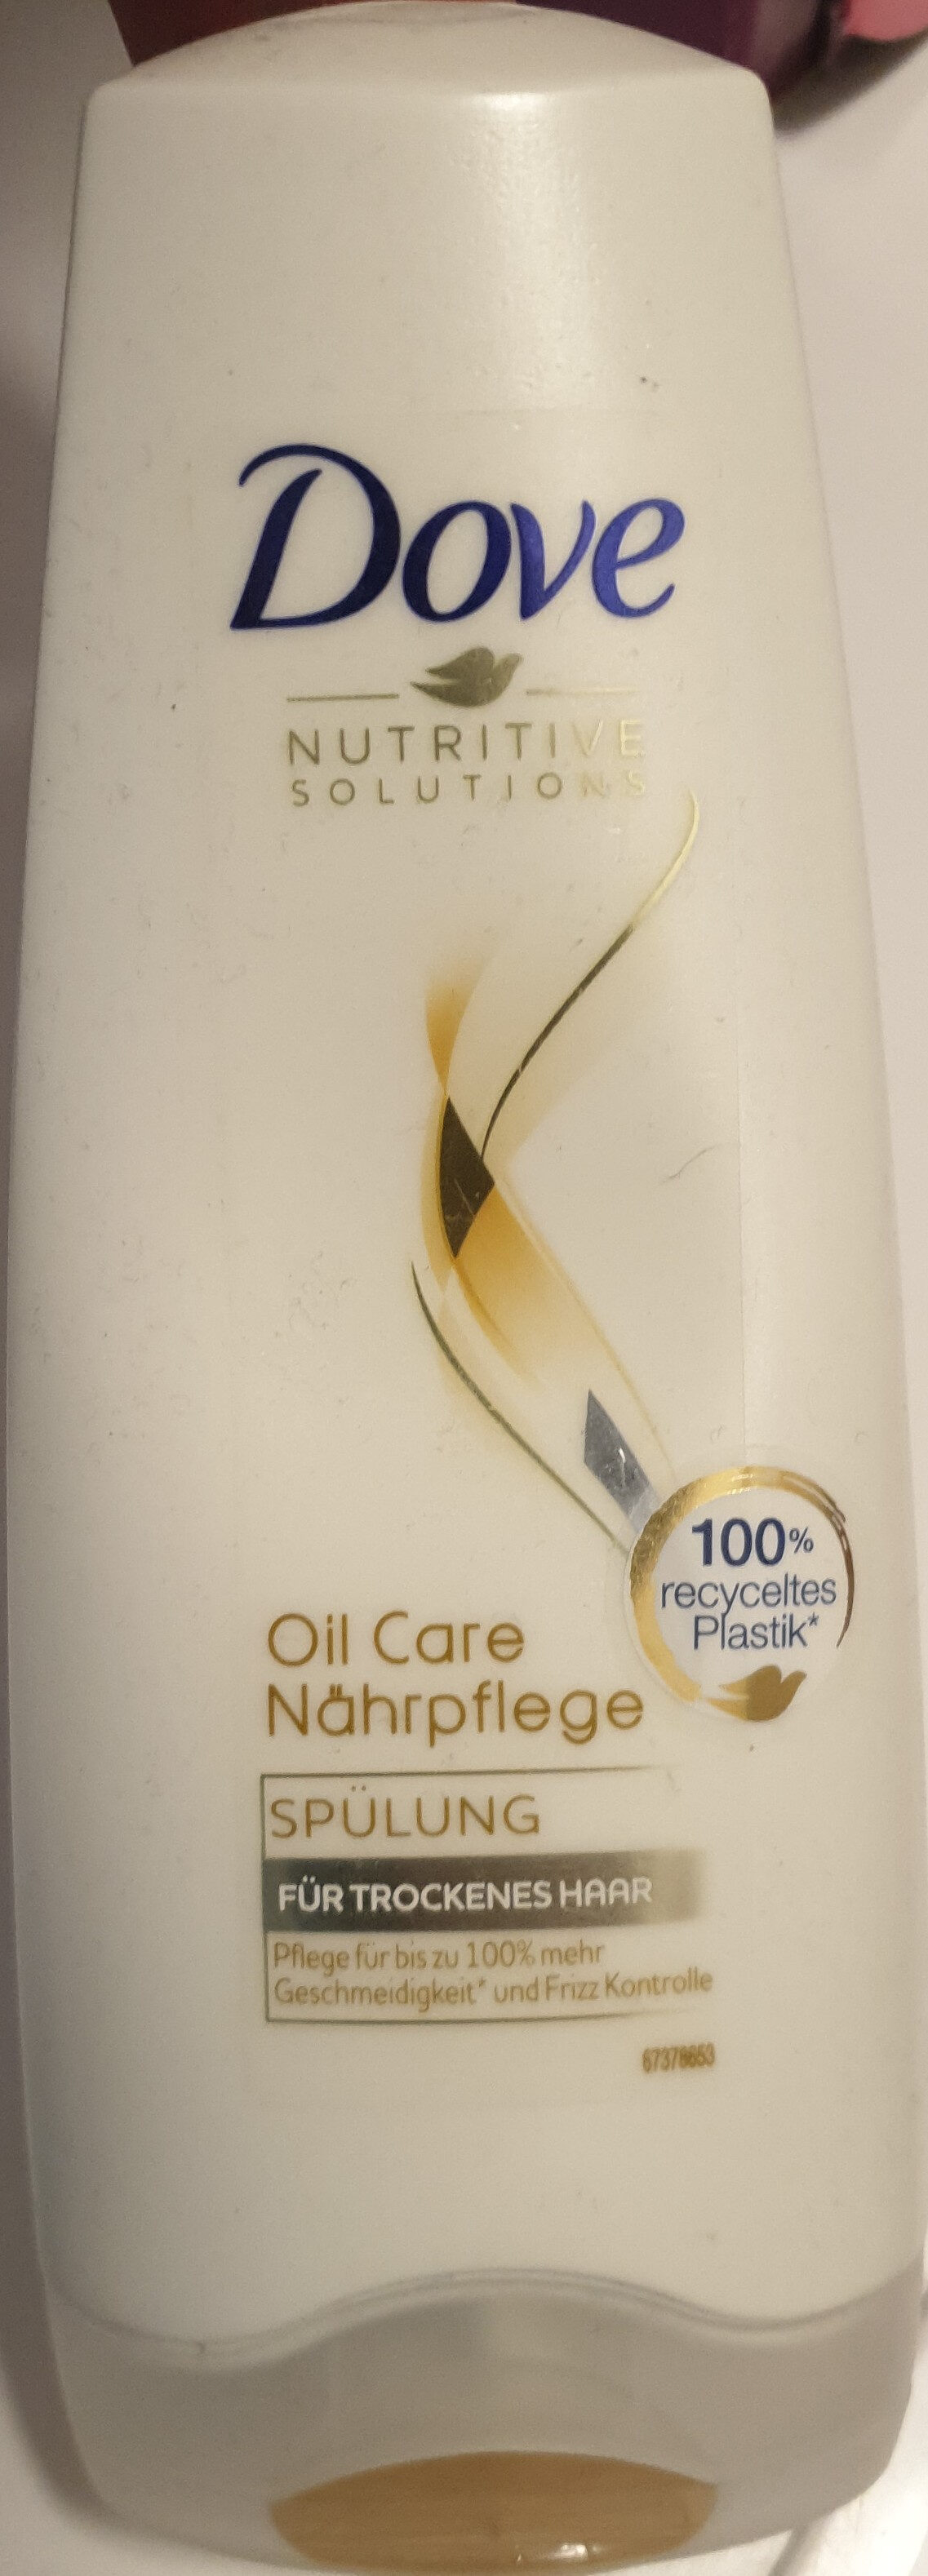 Oil Care Nährpflege - Produkt - de